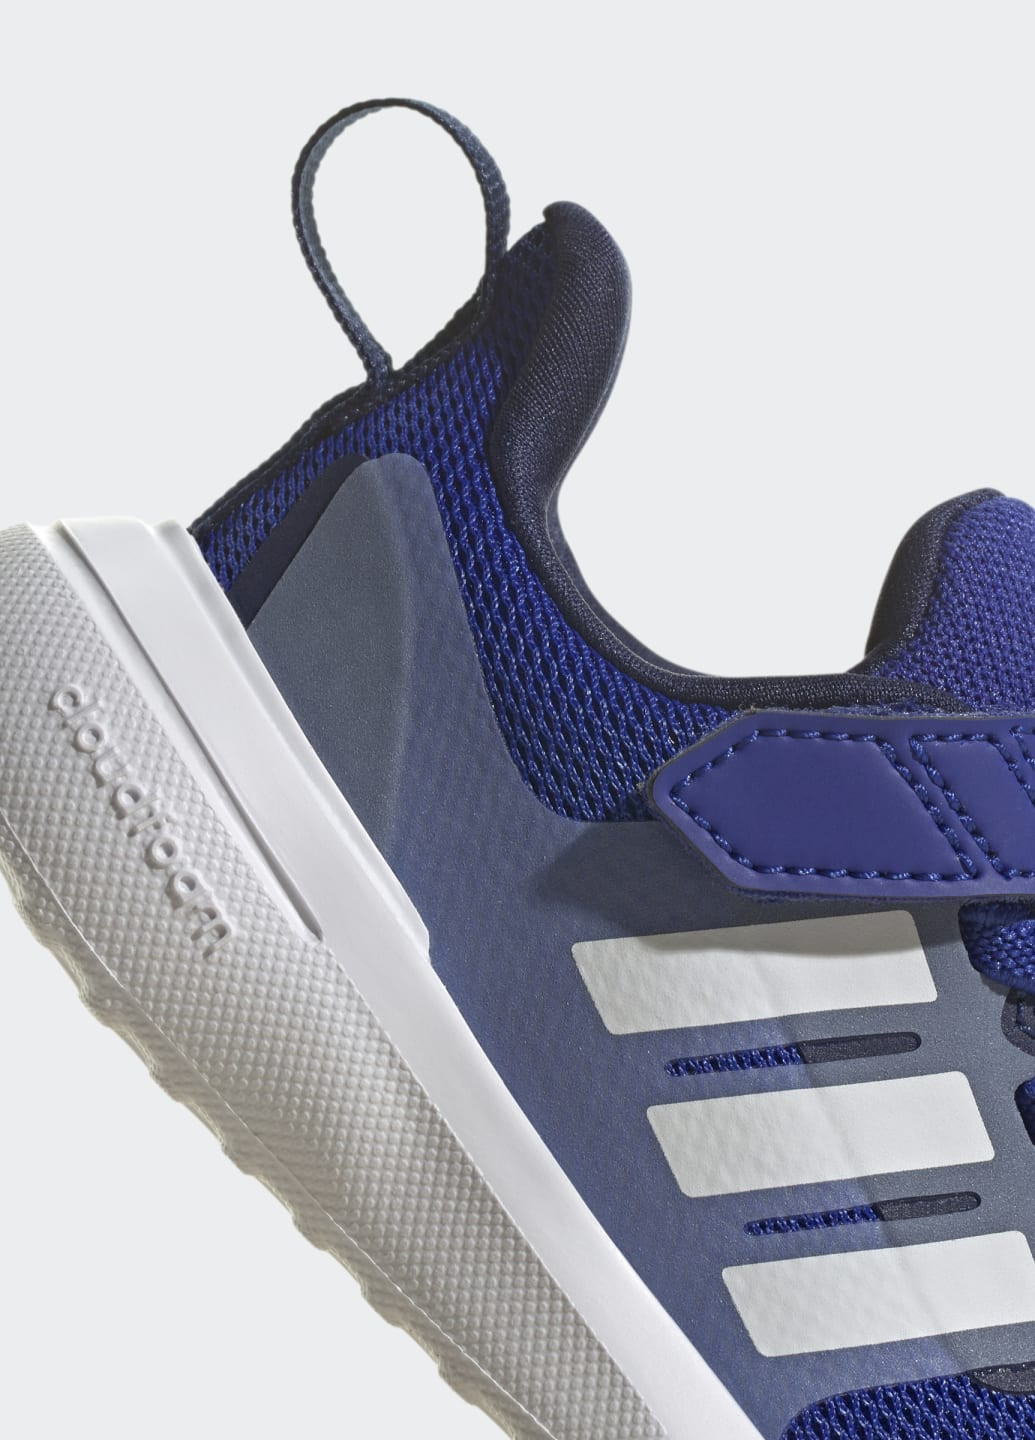 Синій всесезонні кросівки fortarun 2.0 cloudfoam adidas